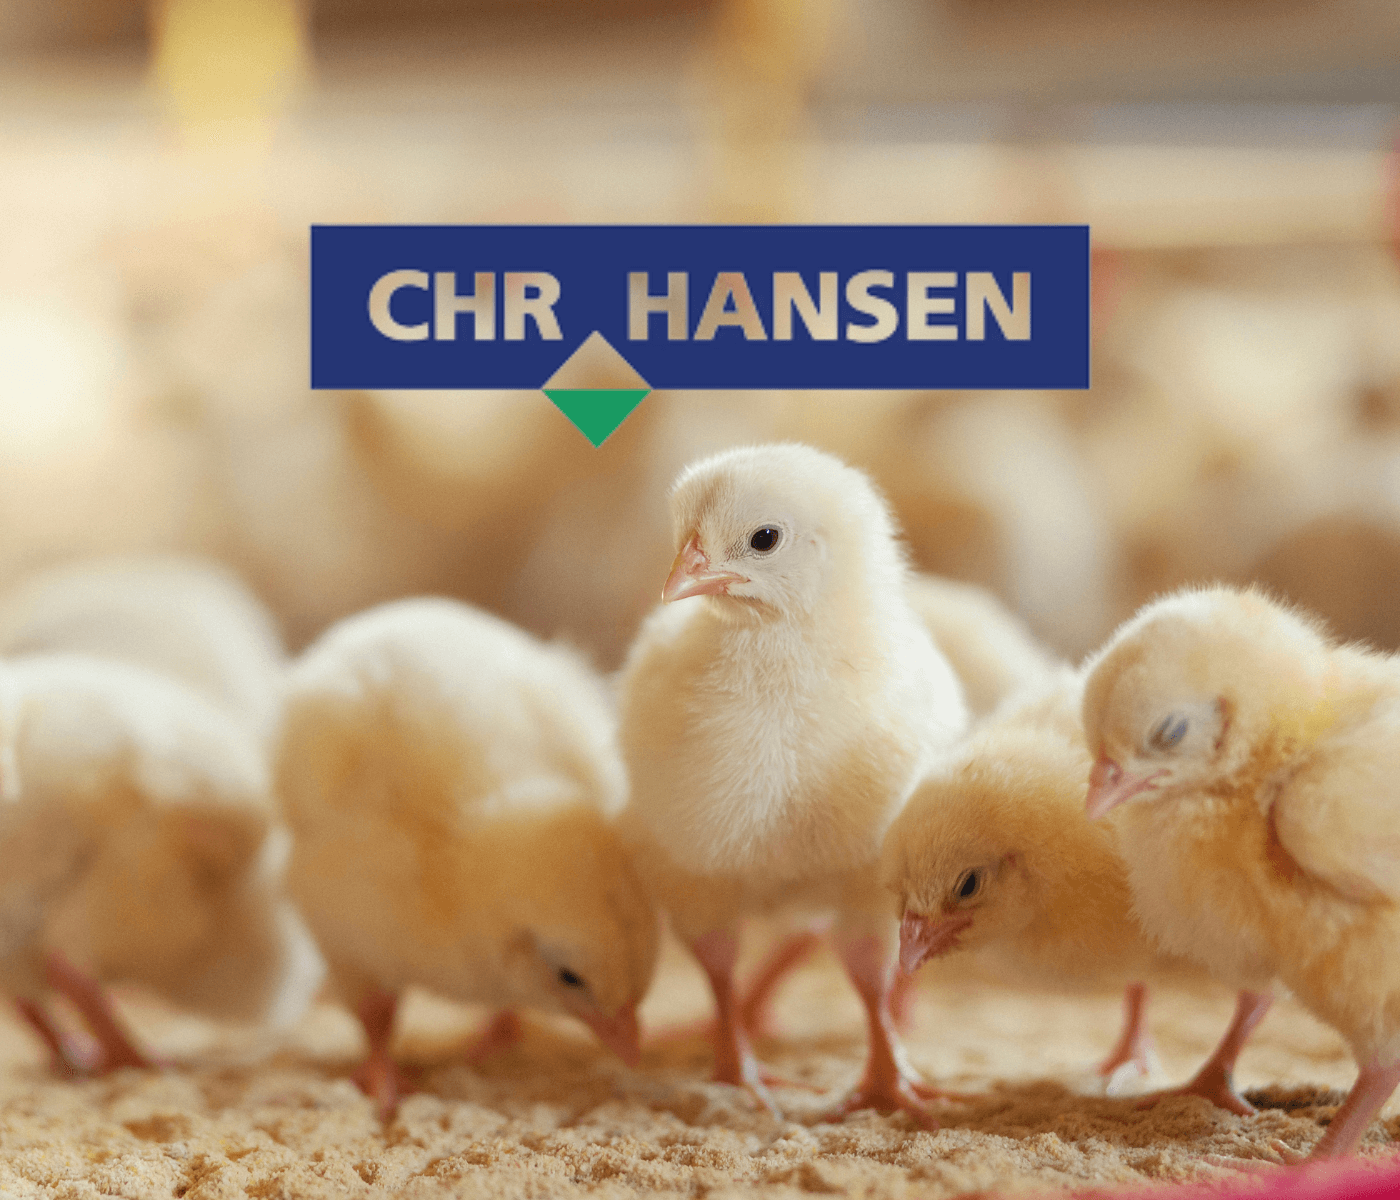 Chr. Hansen é a Top of Mind em probióticos para avicultura no Brasil